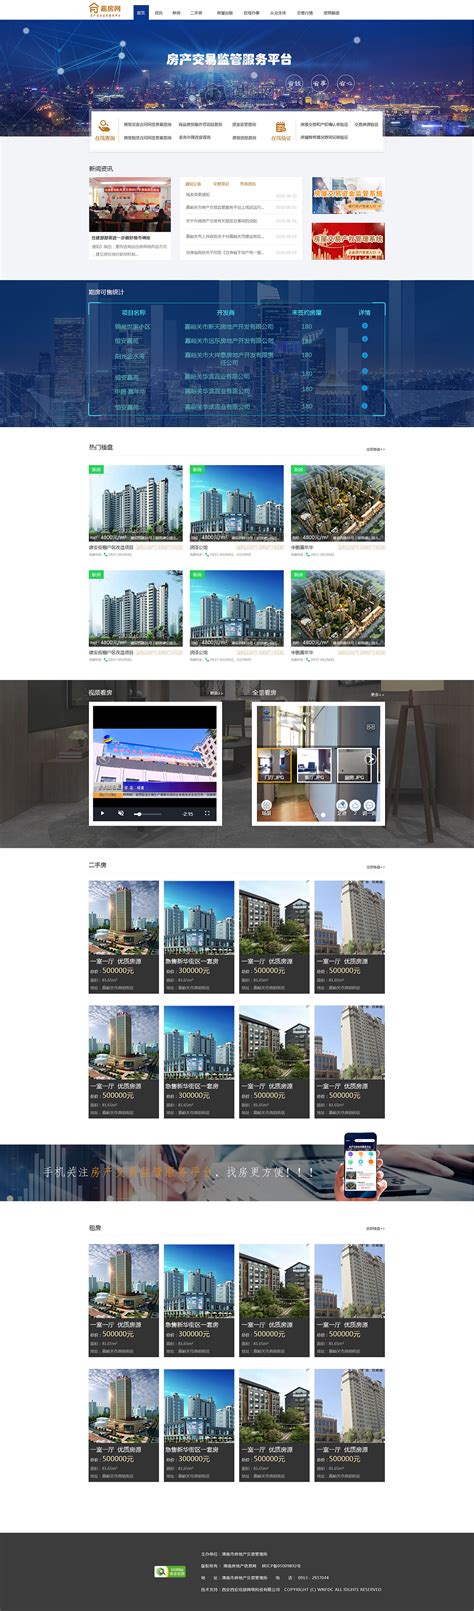 国外房产网站筛选表单设计 - - 大美工dameigong.cn